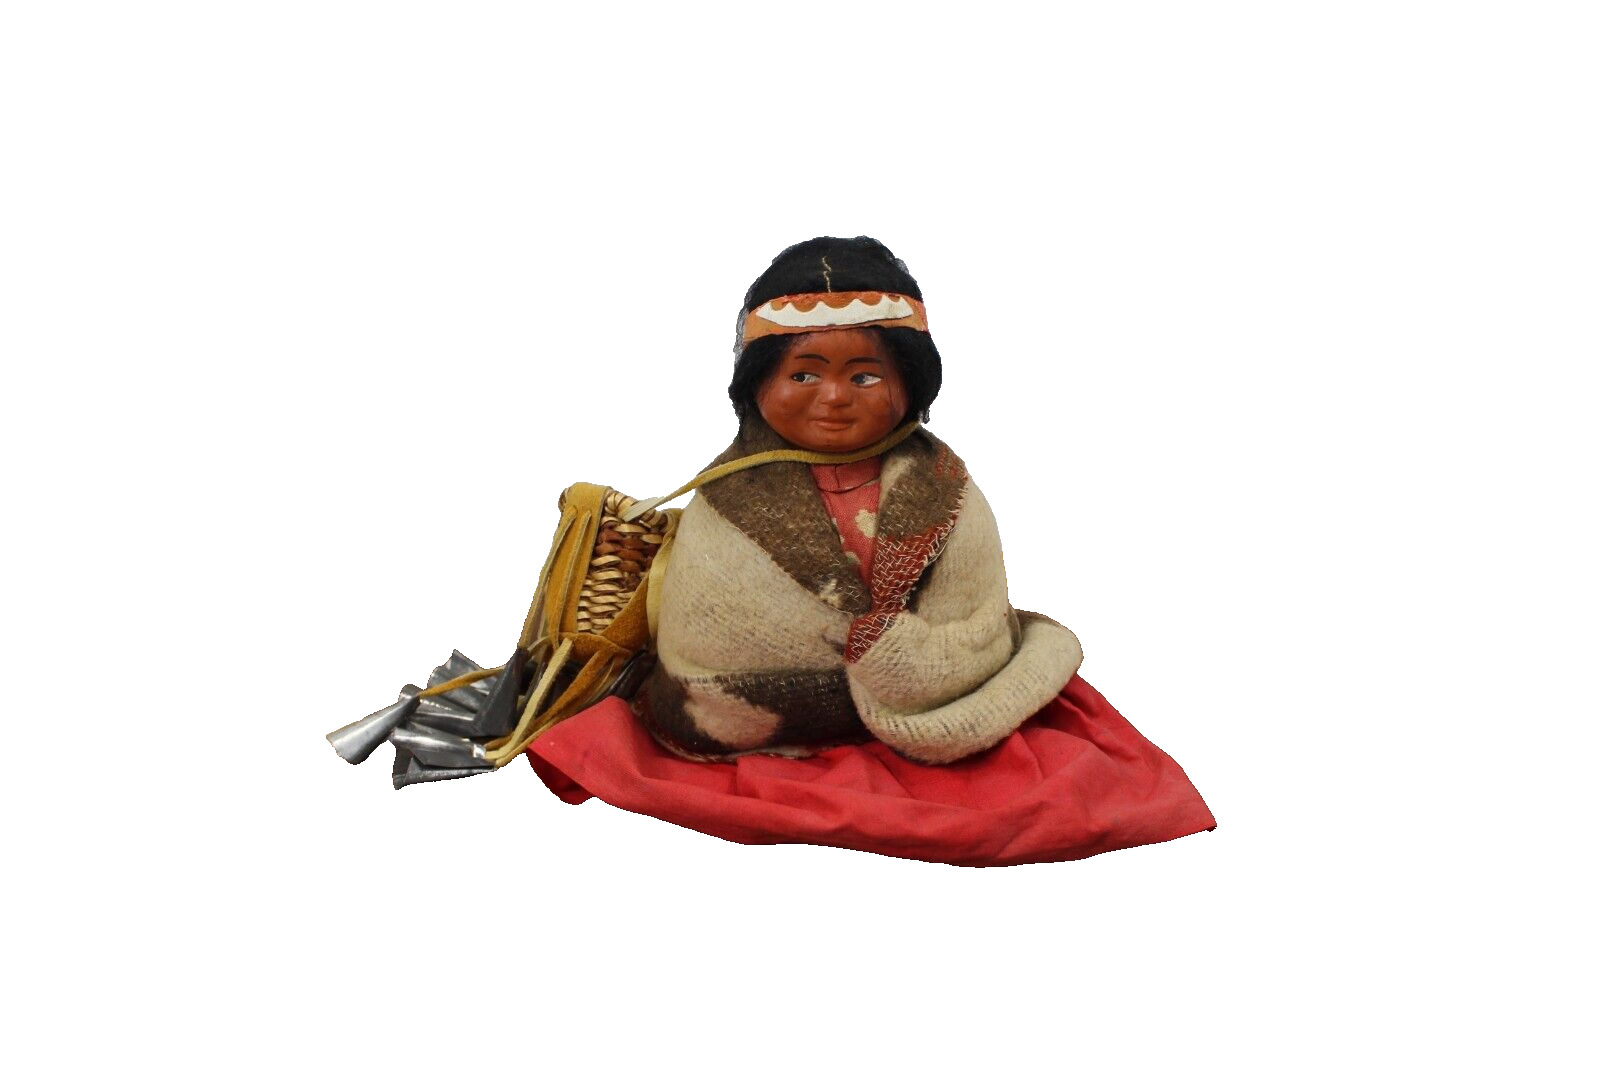 Vintage Native American Indian Skookum Doll in Trade Blanket Sitting Down